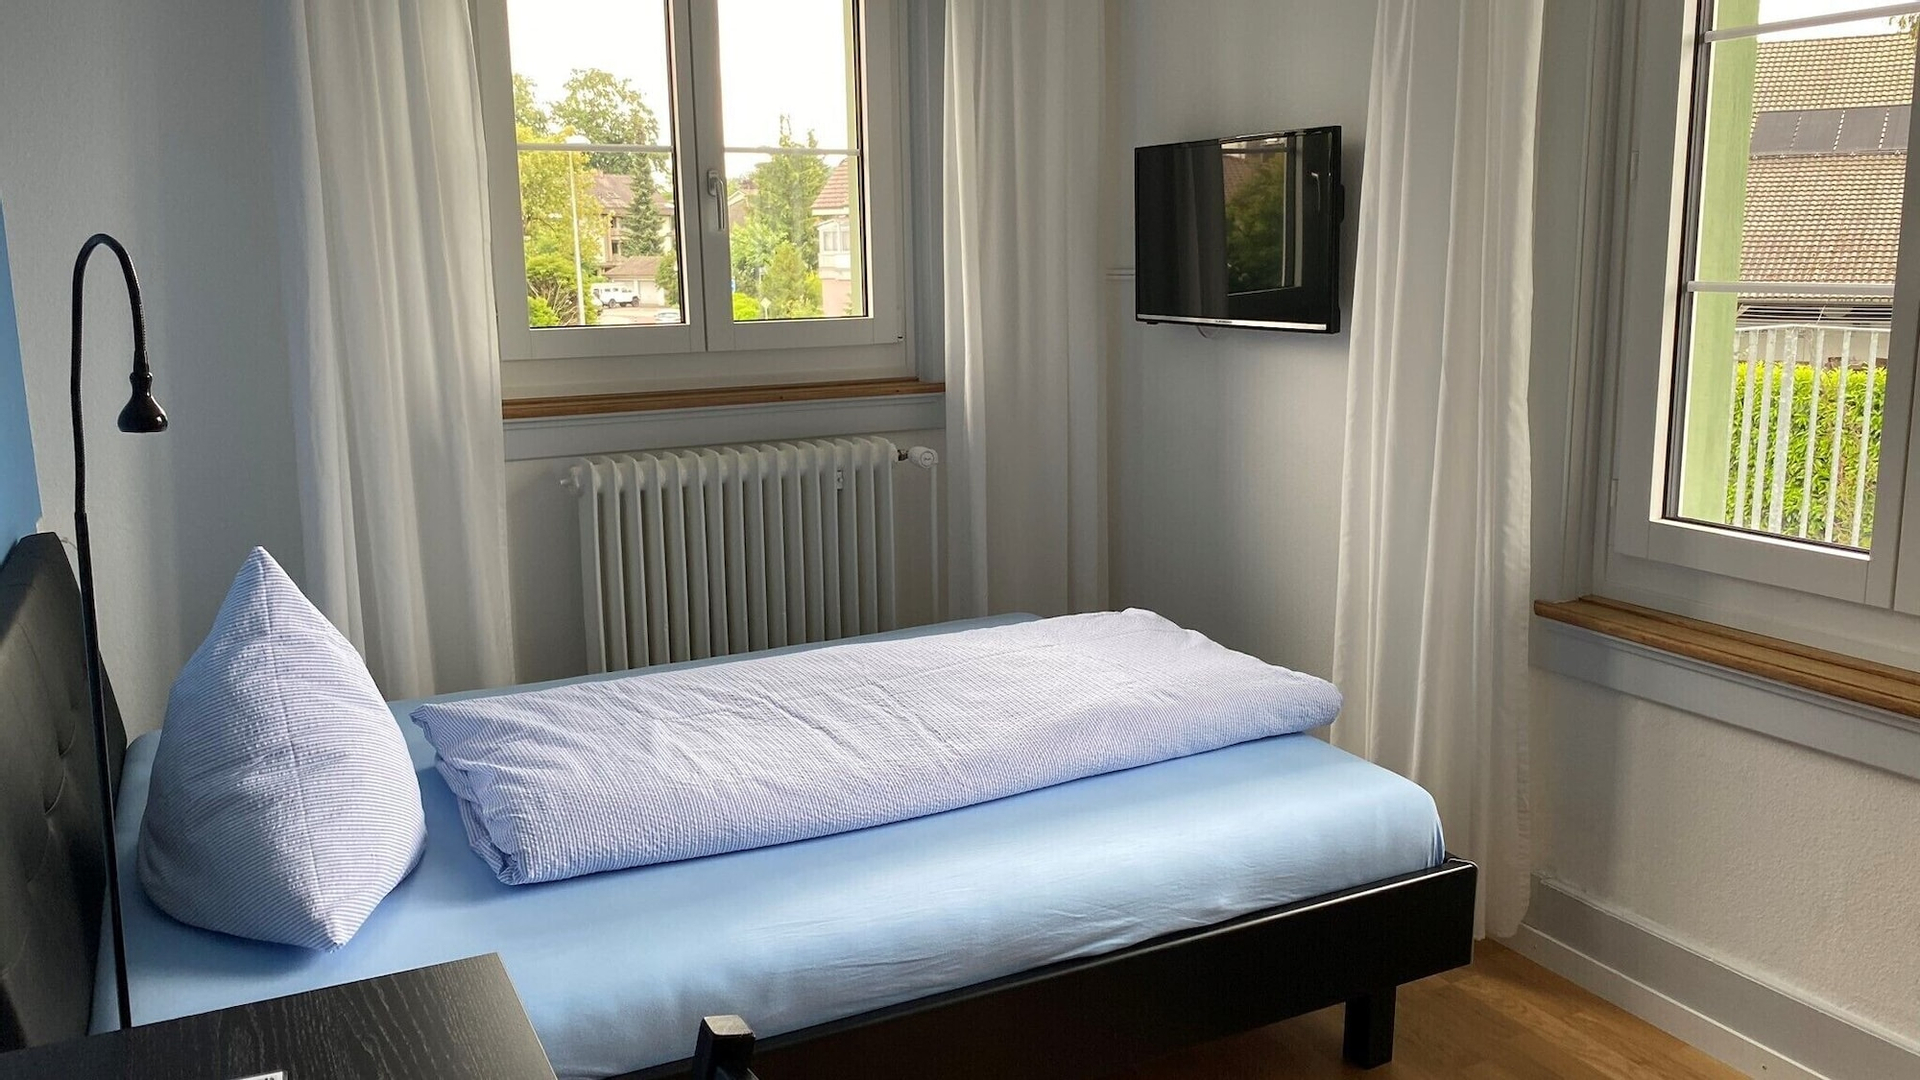 Bedroom 1, BnB Hopfengrün Langenthal, Aarwangen